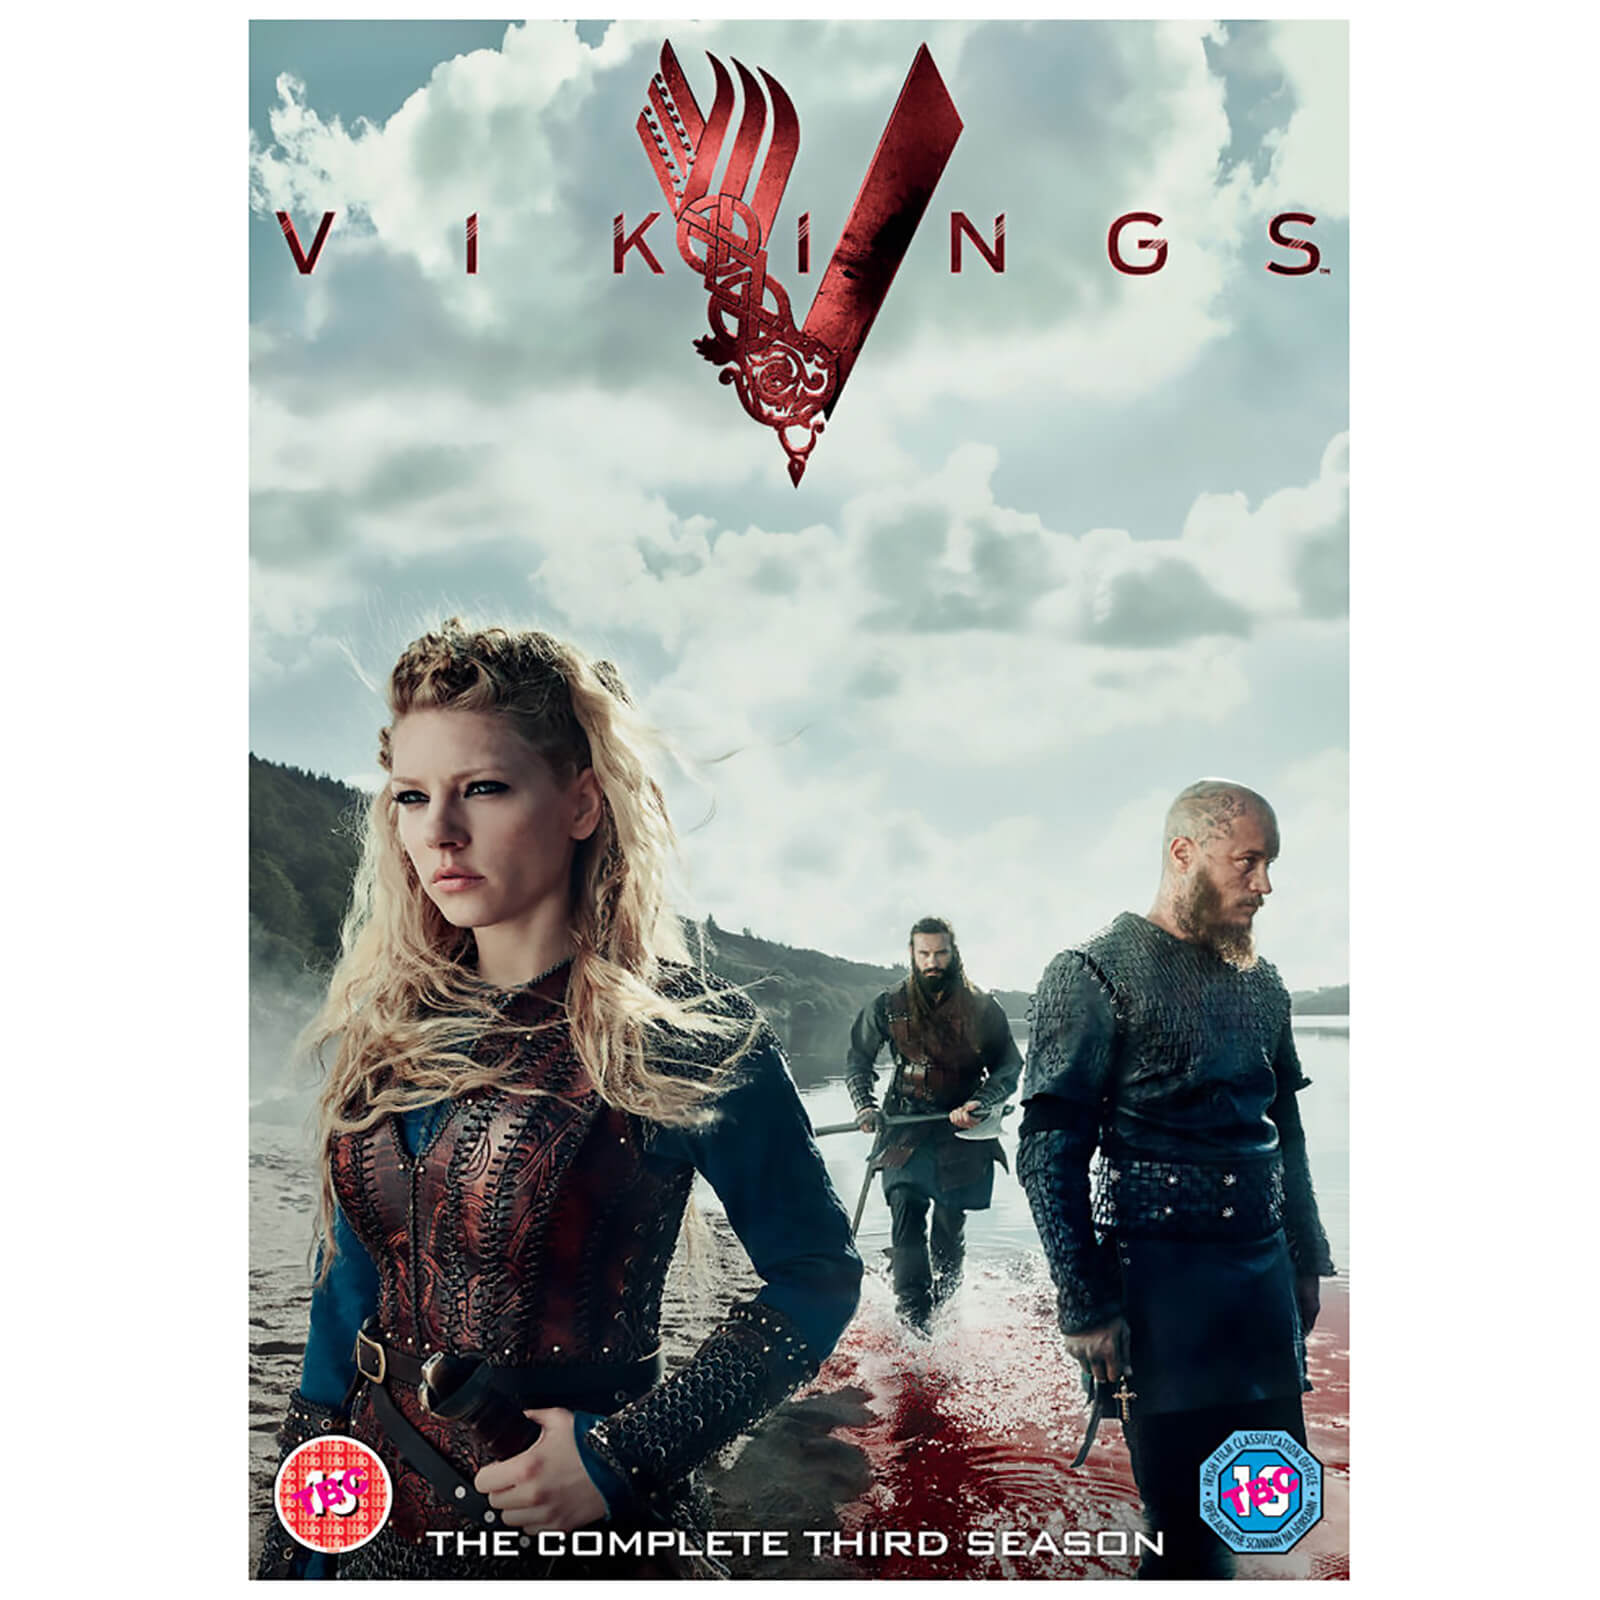 Vikings - Staffel 3 von 20th Century Fox